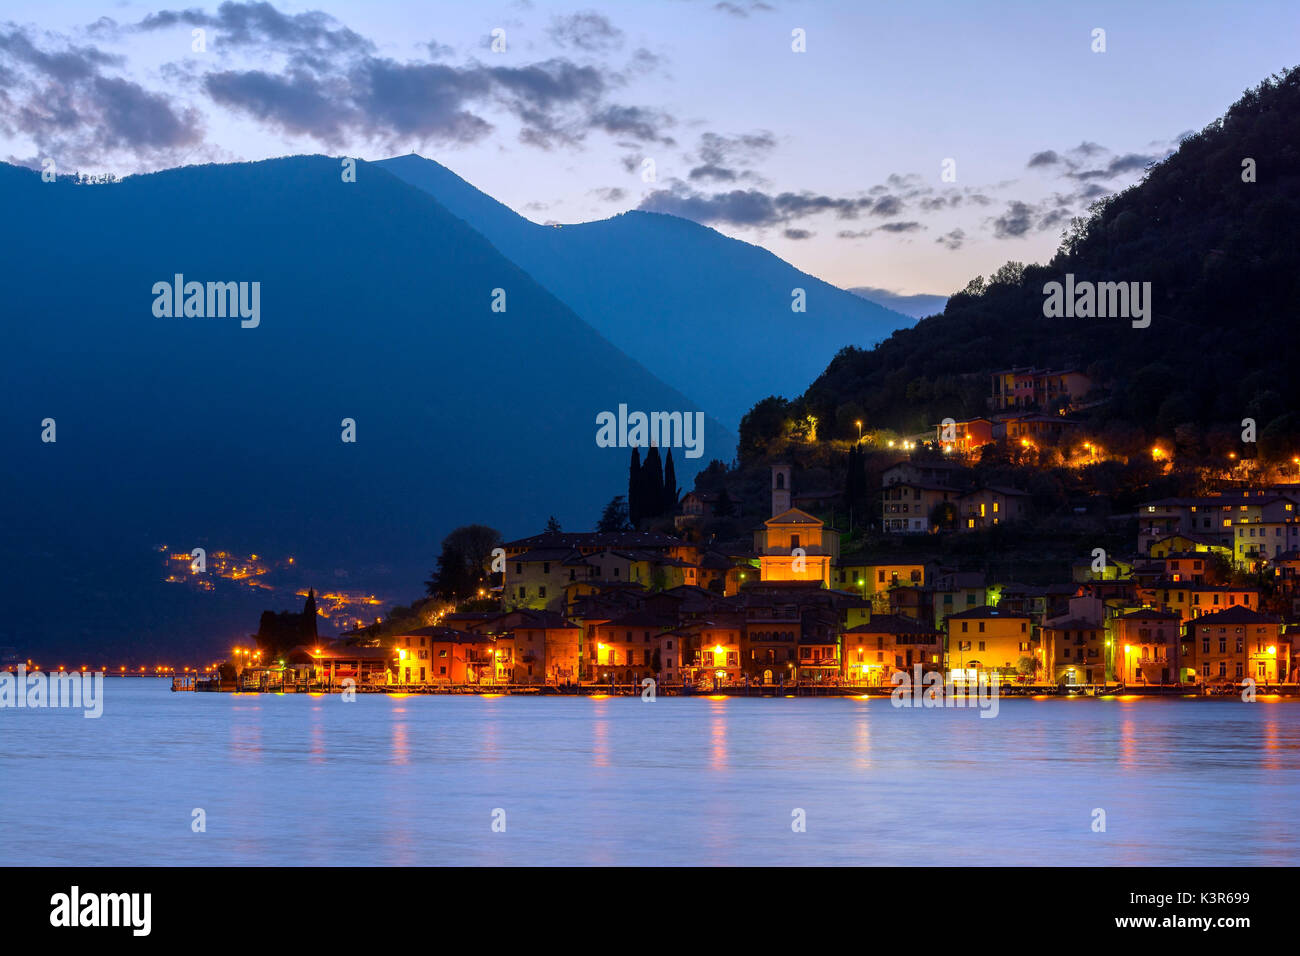 Peschiera Maraglio poco después de la puesta del sol, las luces de la pequeña aldea de Montisola, la isla lacustre más grande de Europa, en la provincia de Brescia, el lago de Iseo Foto de stock